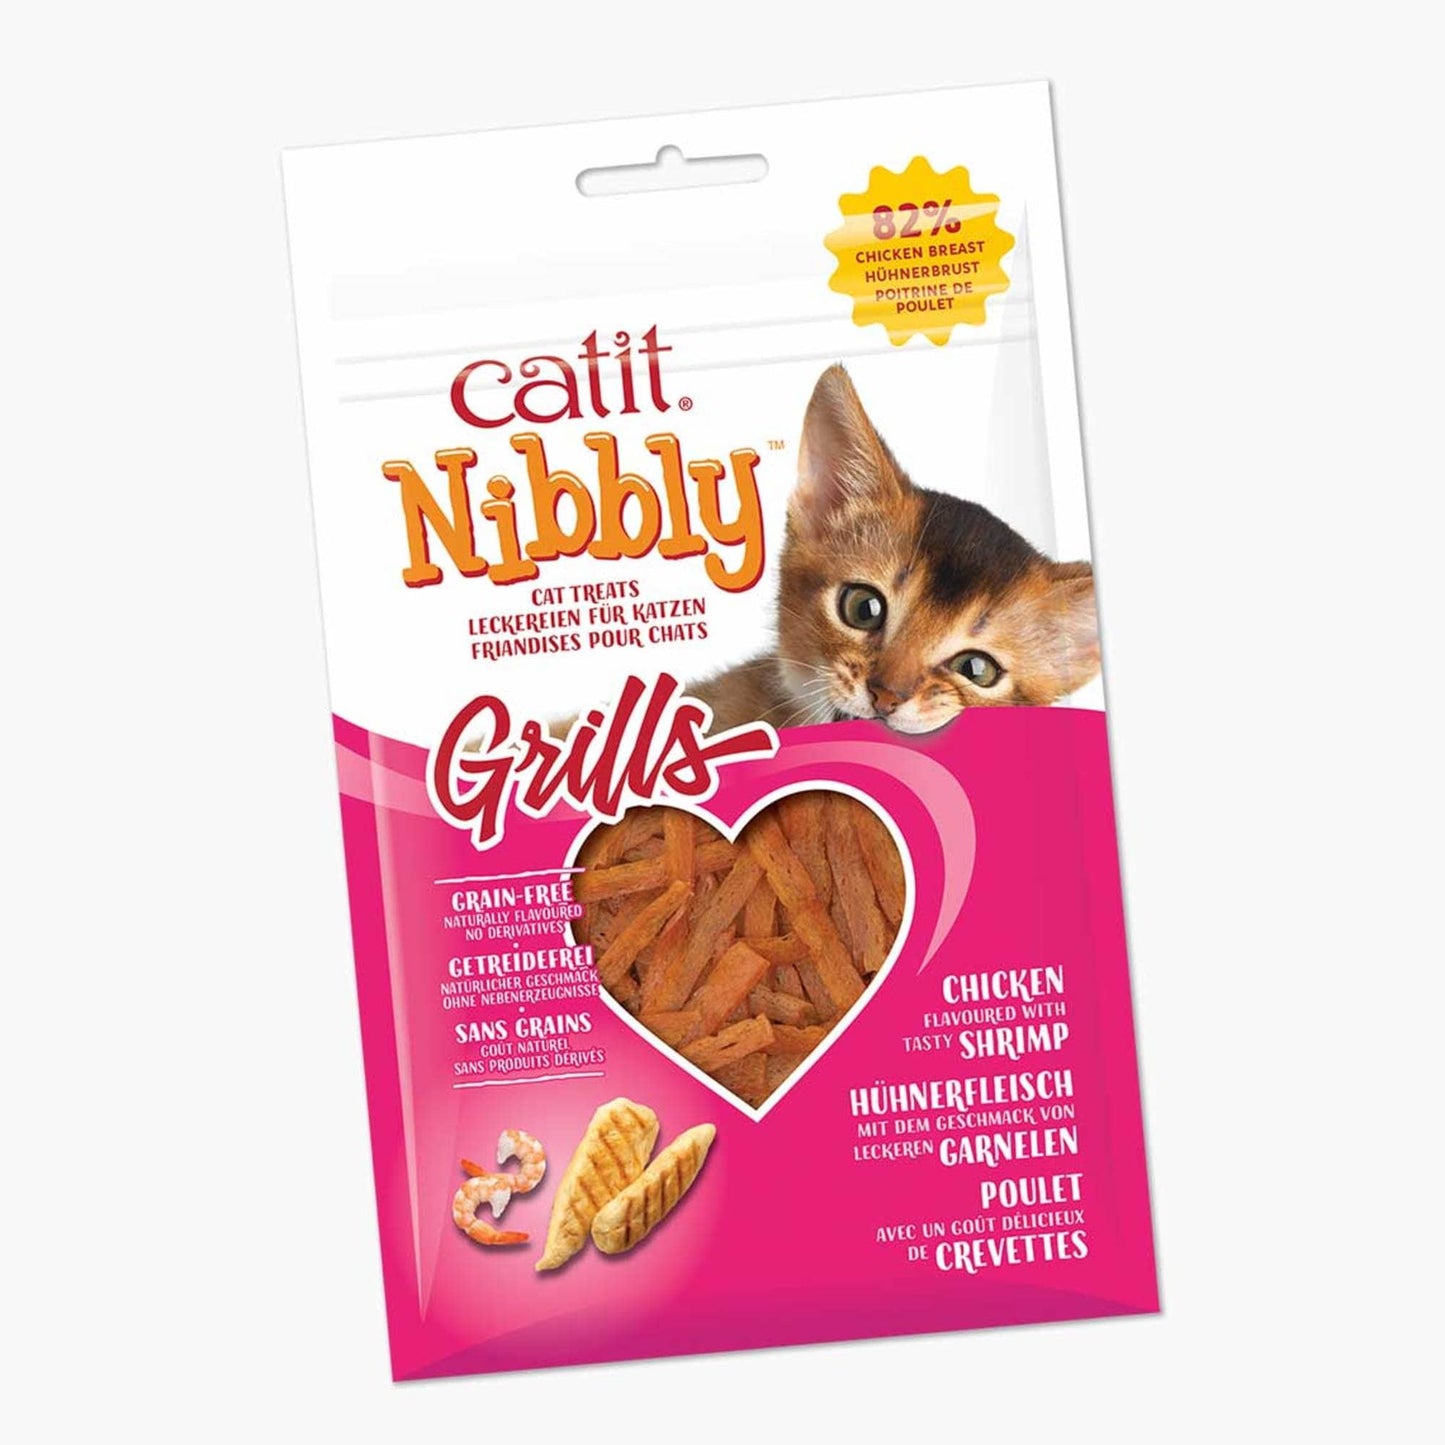 Friandises Catit Nibbly Grills ─ Grills – Arôme de crevettes